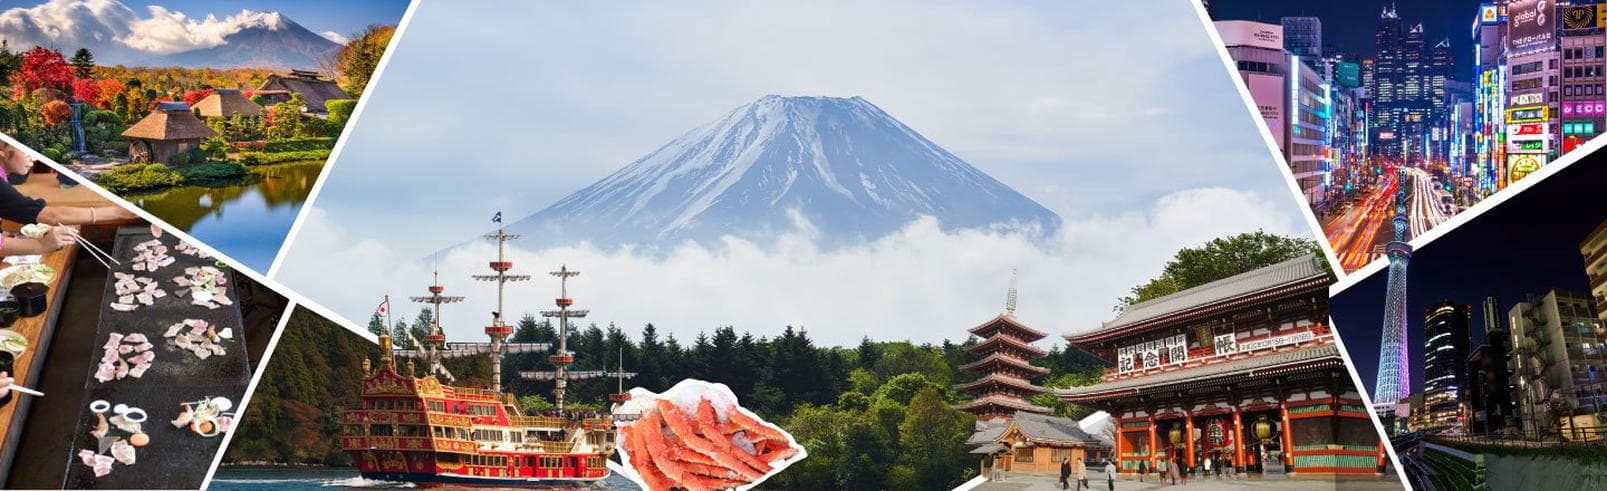 ทัวร์ญี่ปุ่น โตเกียว 5 วัน 3 คืน  ภูเขาไฟฟูจิ ล่องเรือทะเลสาบอาชิ บิน  XJ